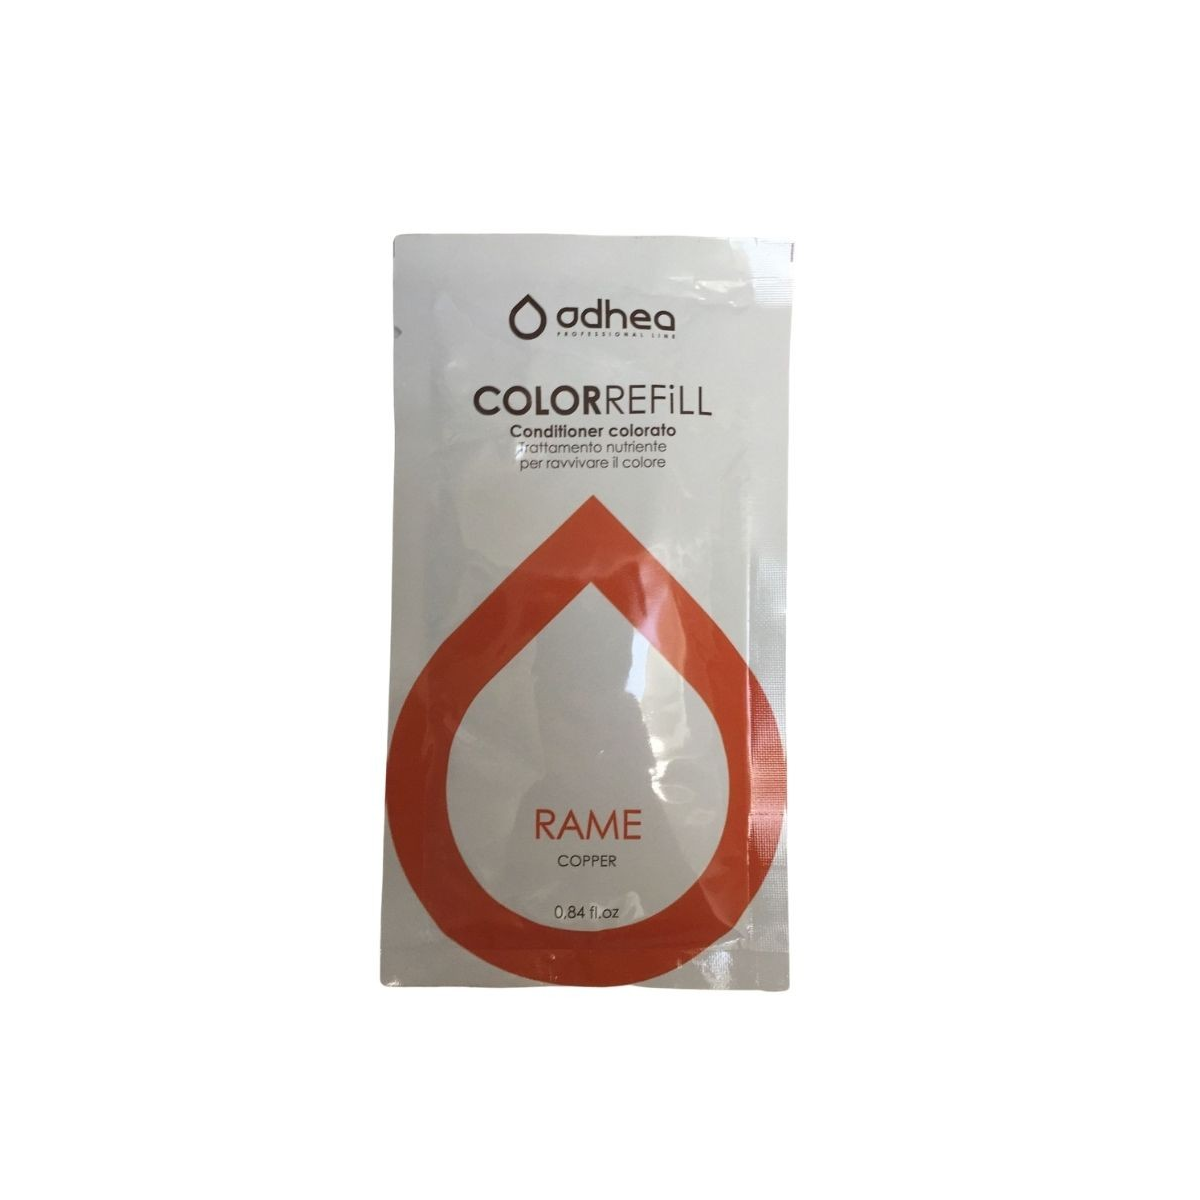 ODHEA - COLOR REFILL RAME (25ml) Conditioner colorato